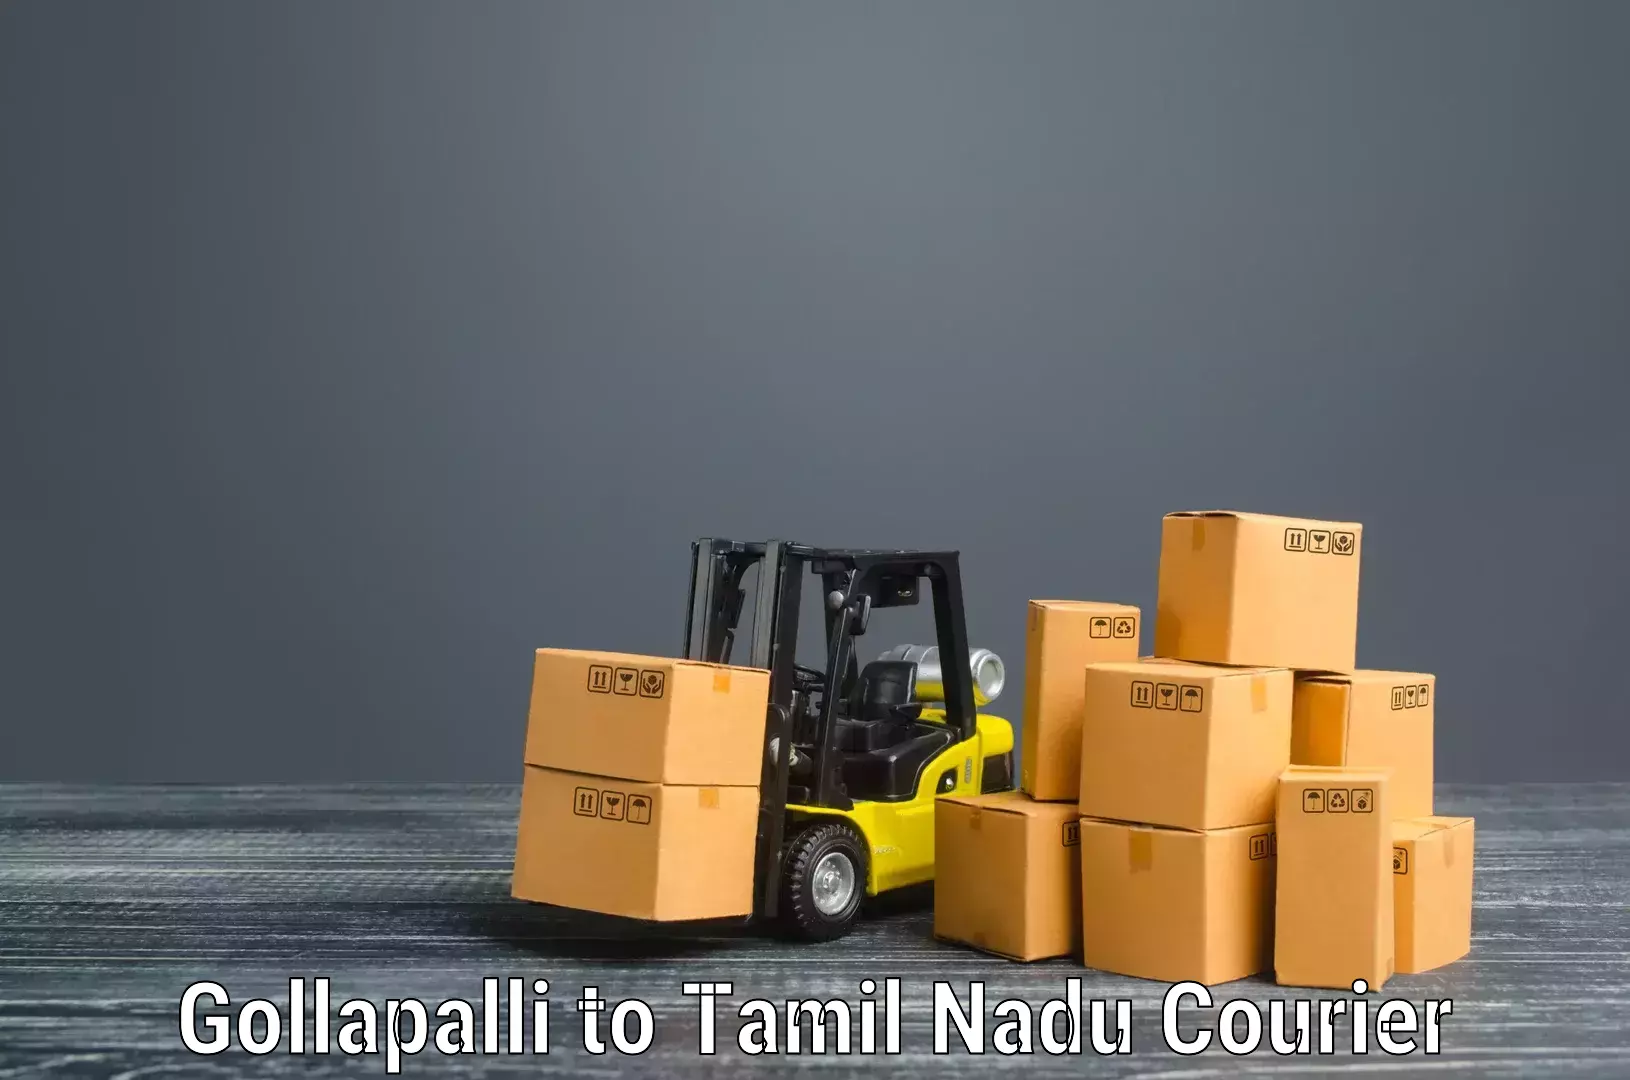 Furniture transport service Gollapalli to Gobichettipalayam